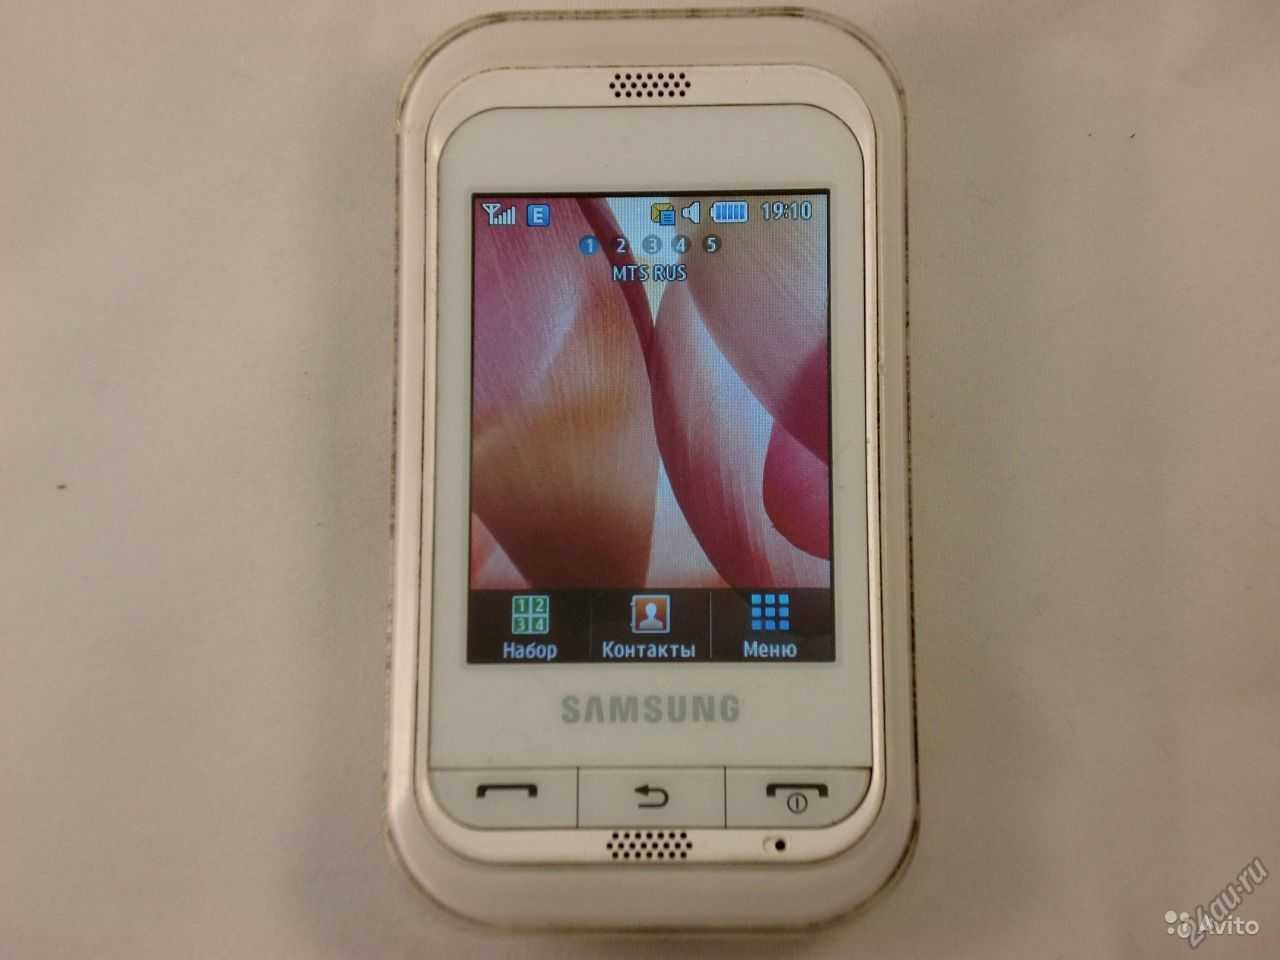 Samsung c3300 champ (pink) - купить , скидки, цена, отзывы, обзор, характеристики - мобильные телефоны